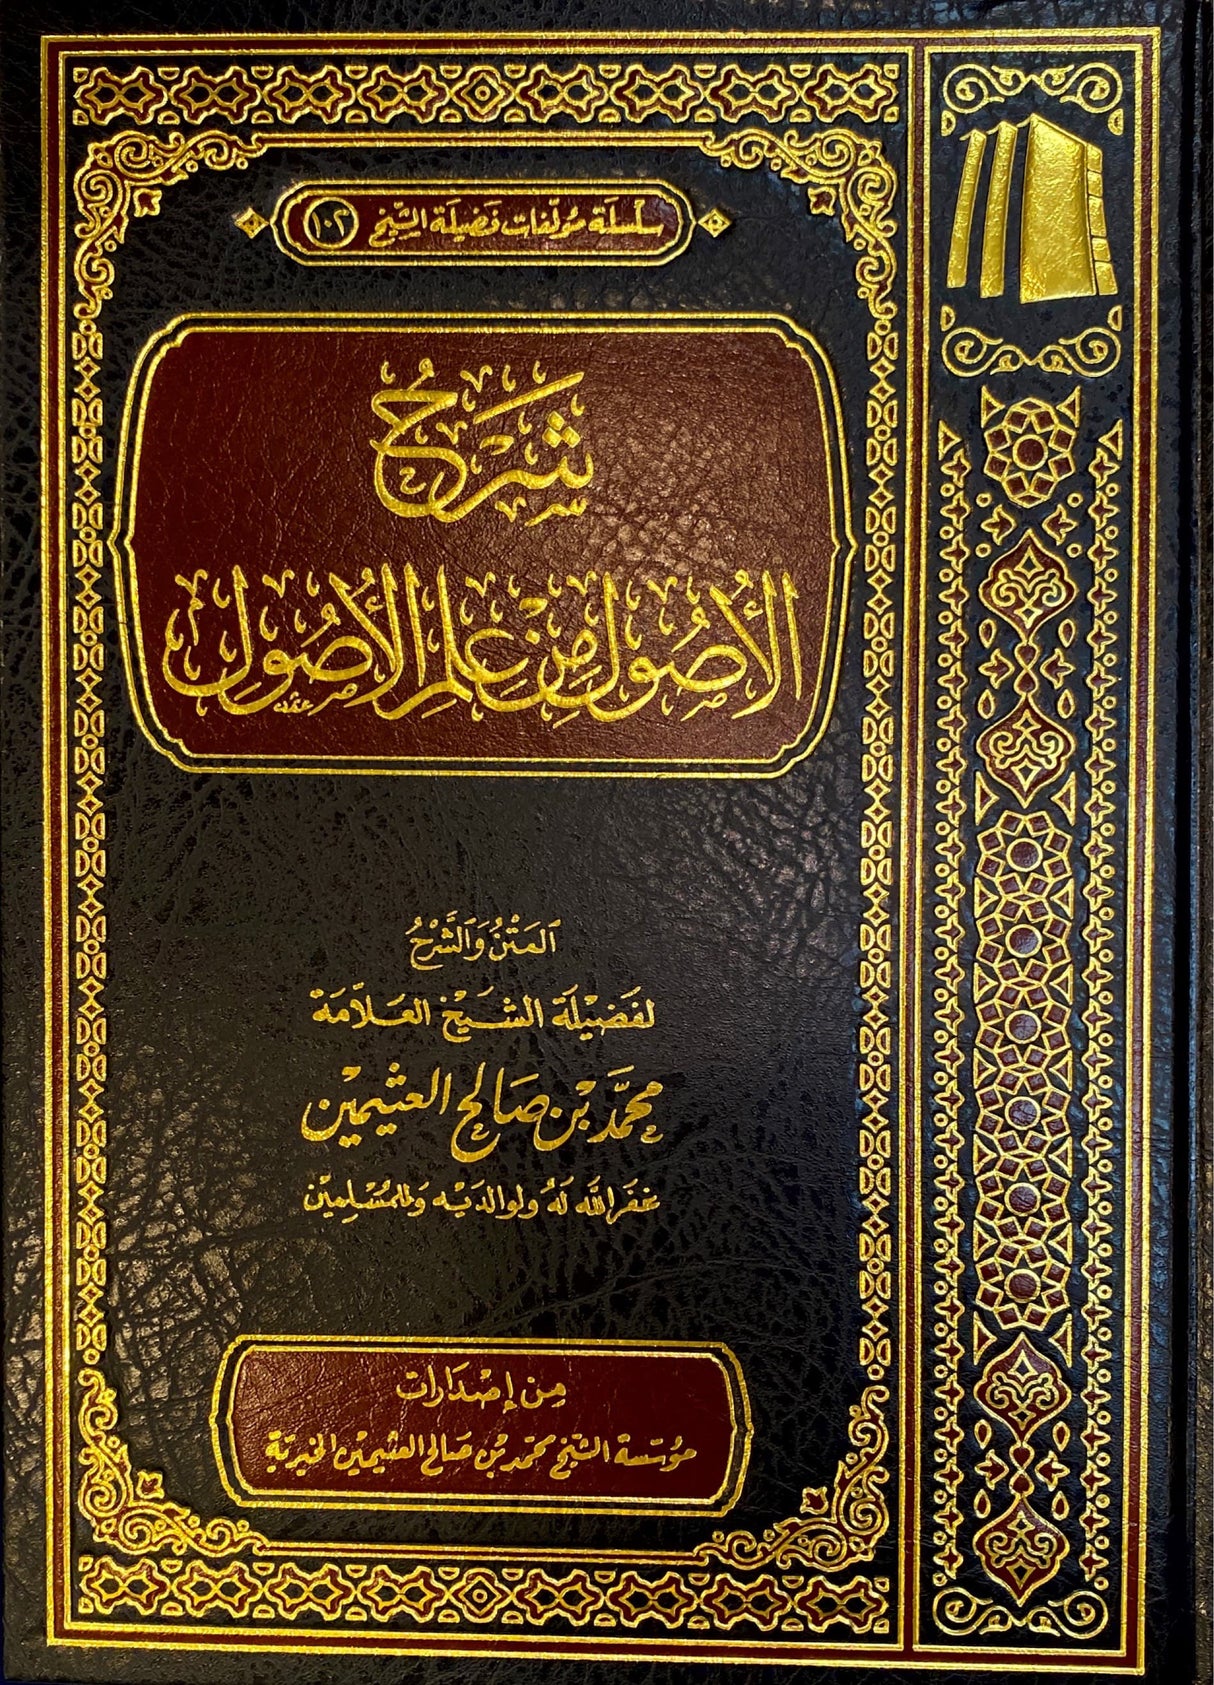 شرح الاصول من علم الاصول   Sharh Al Usul Min Ilm Al Usul